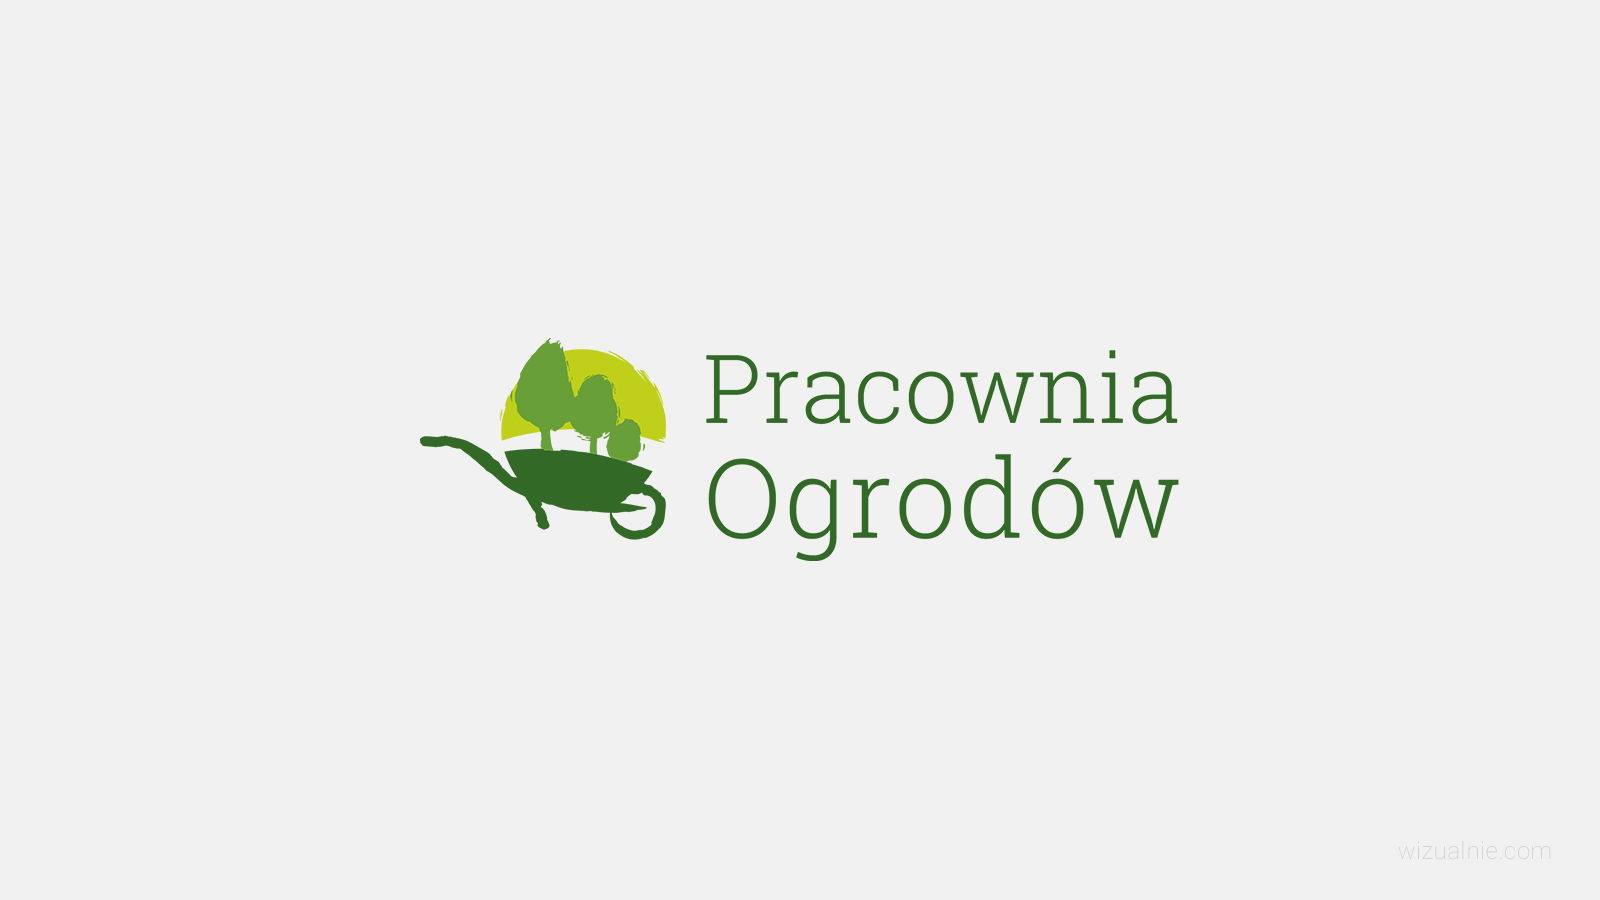 wizualnie-portfolio-pracowniaogrodow-logo